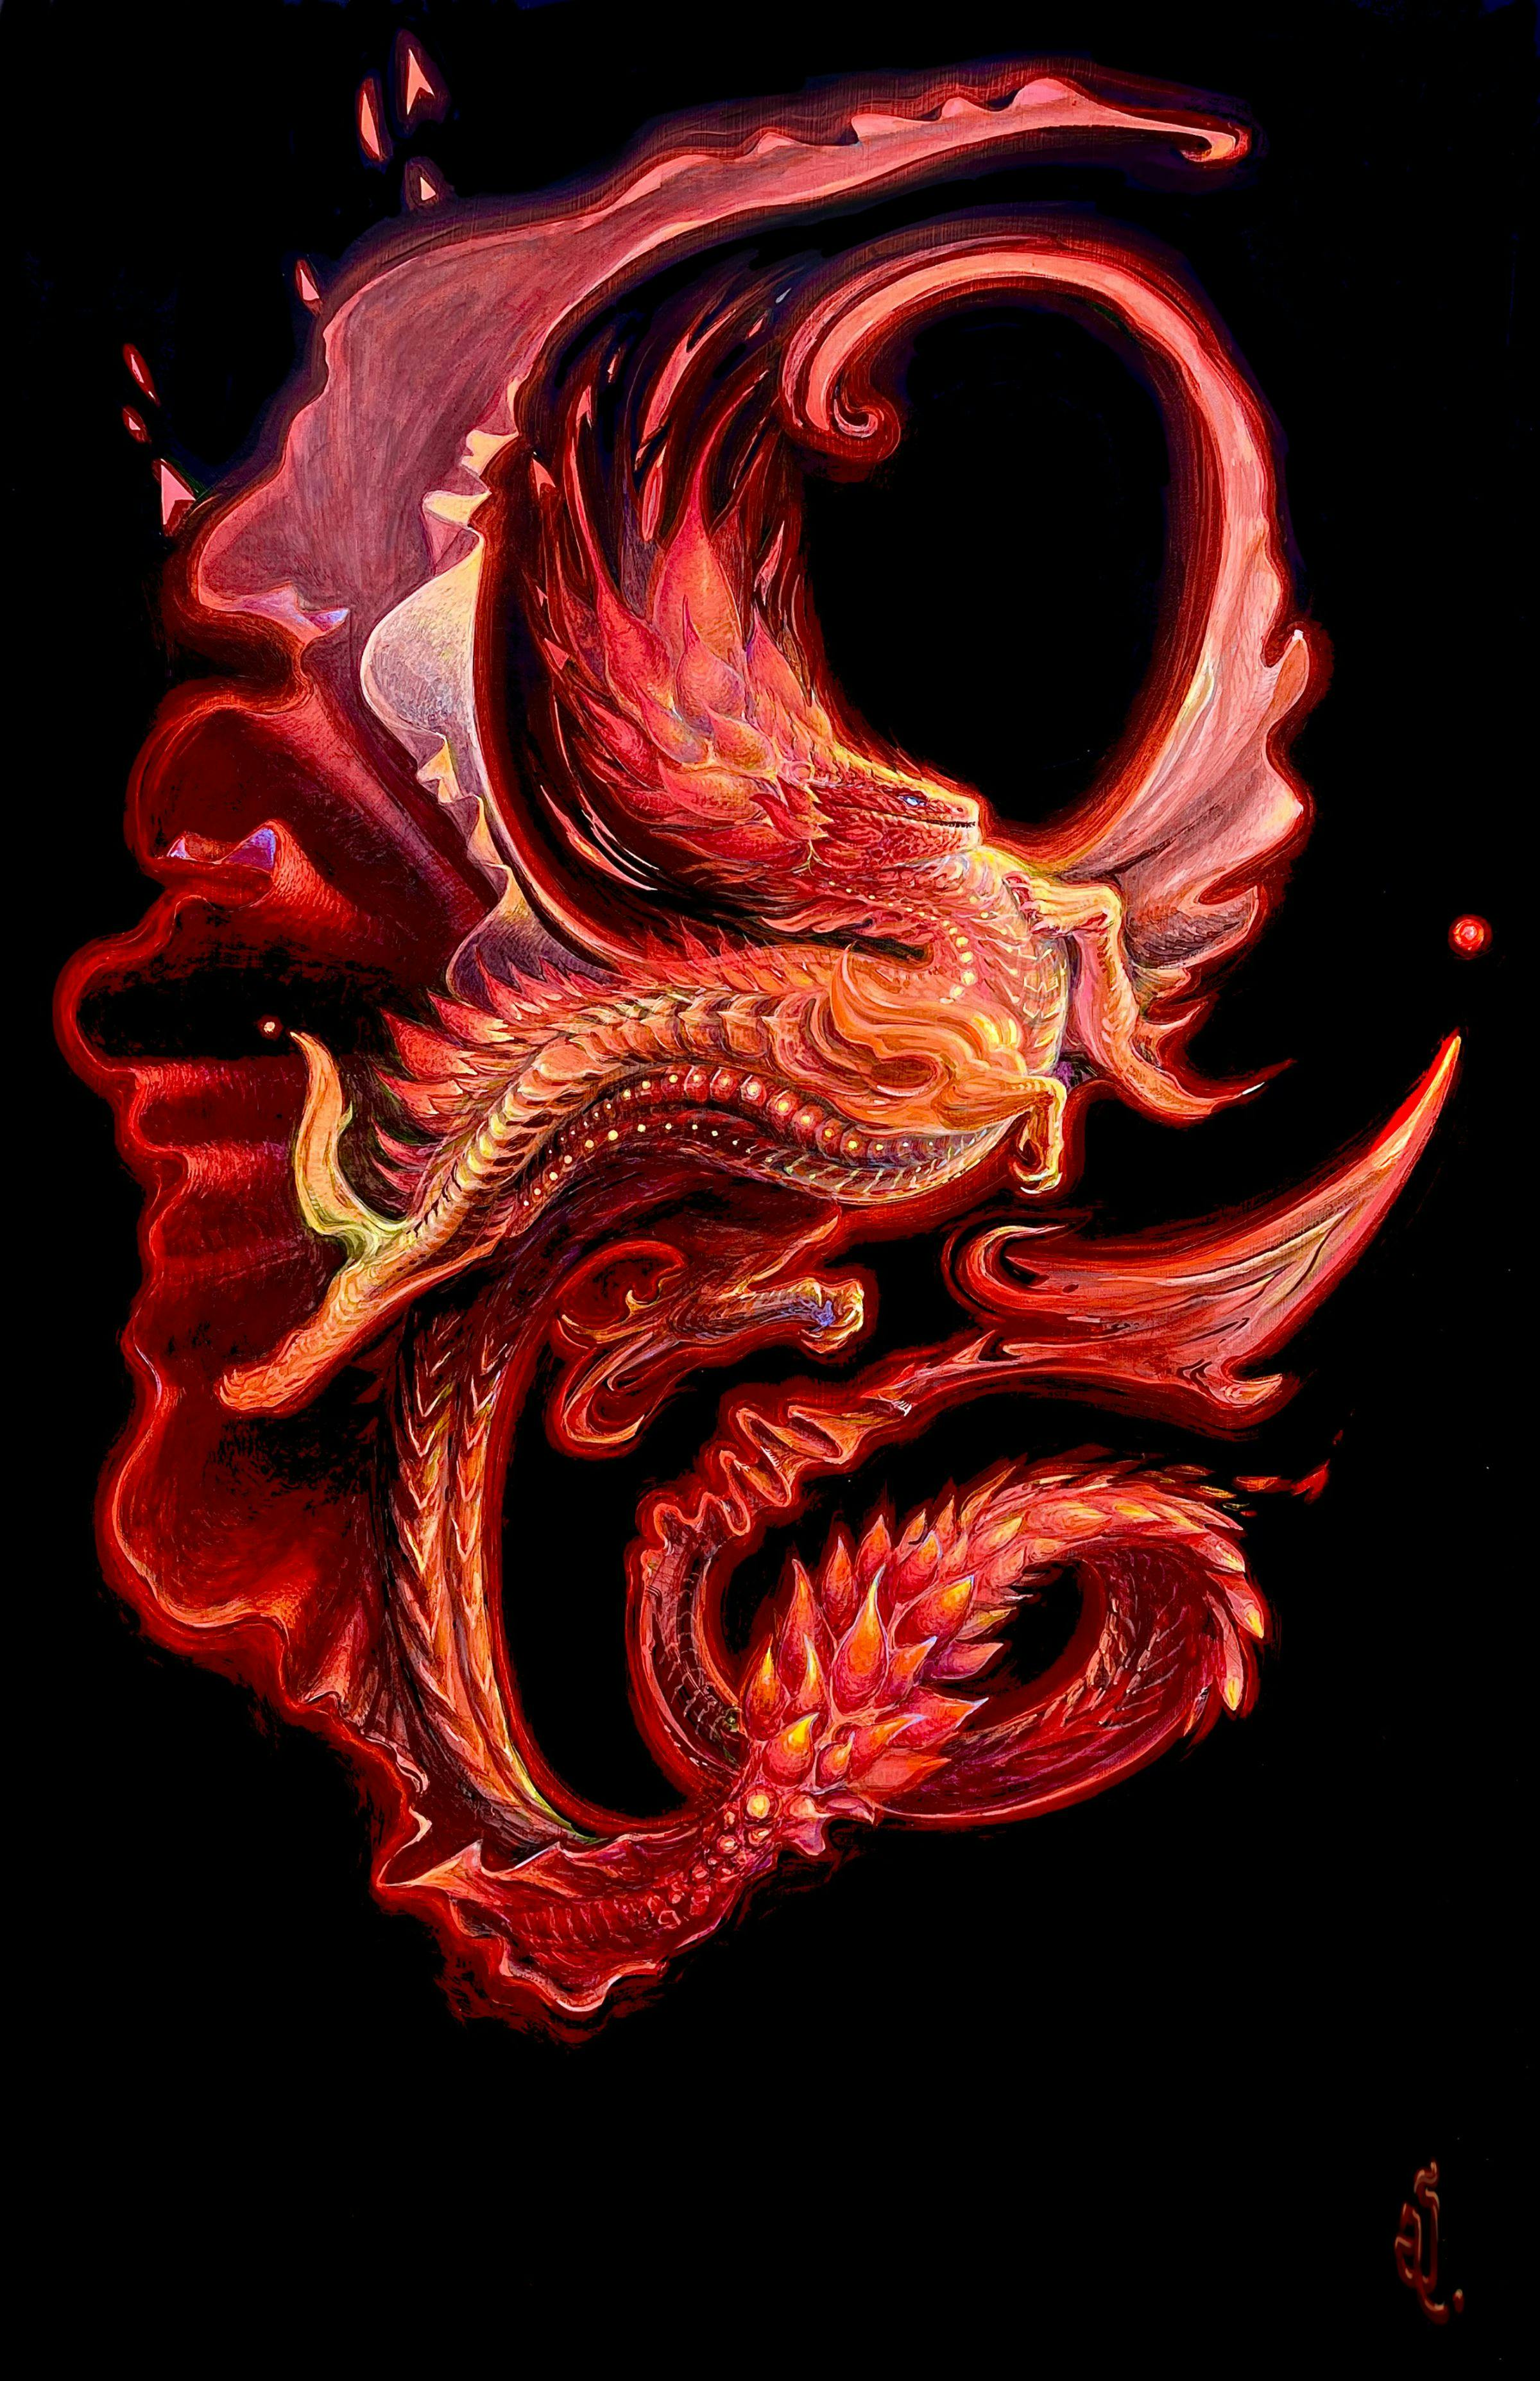 A fire dragon